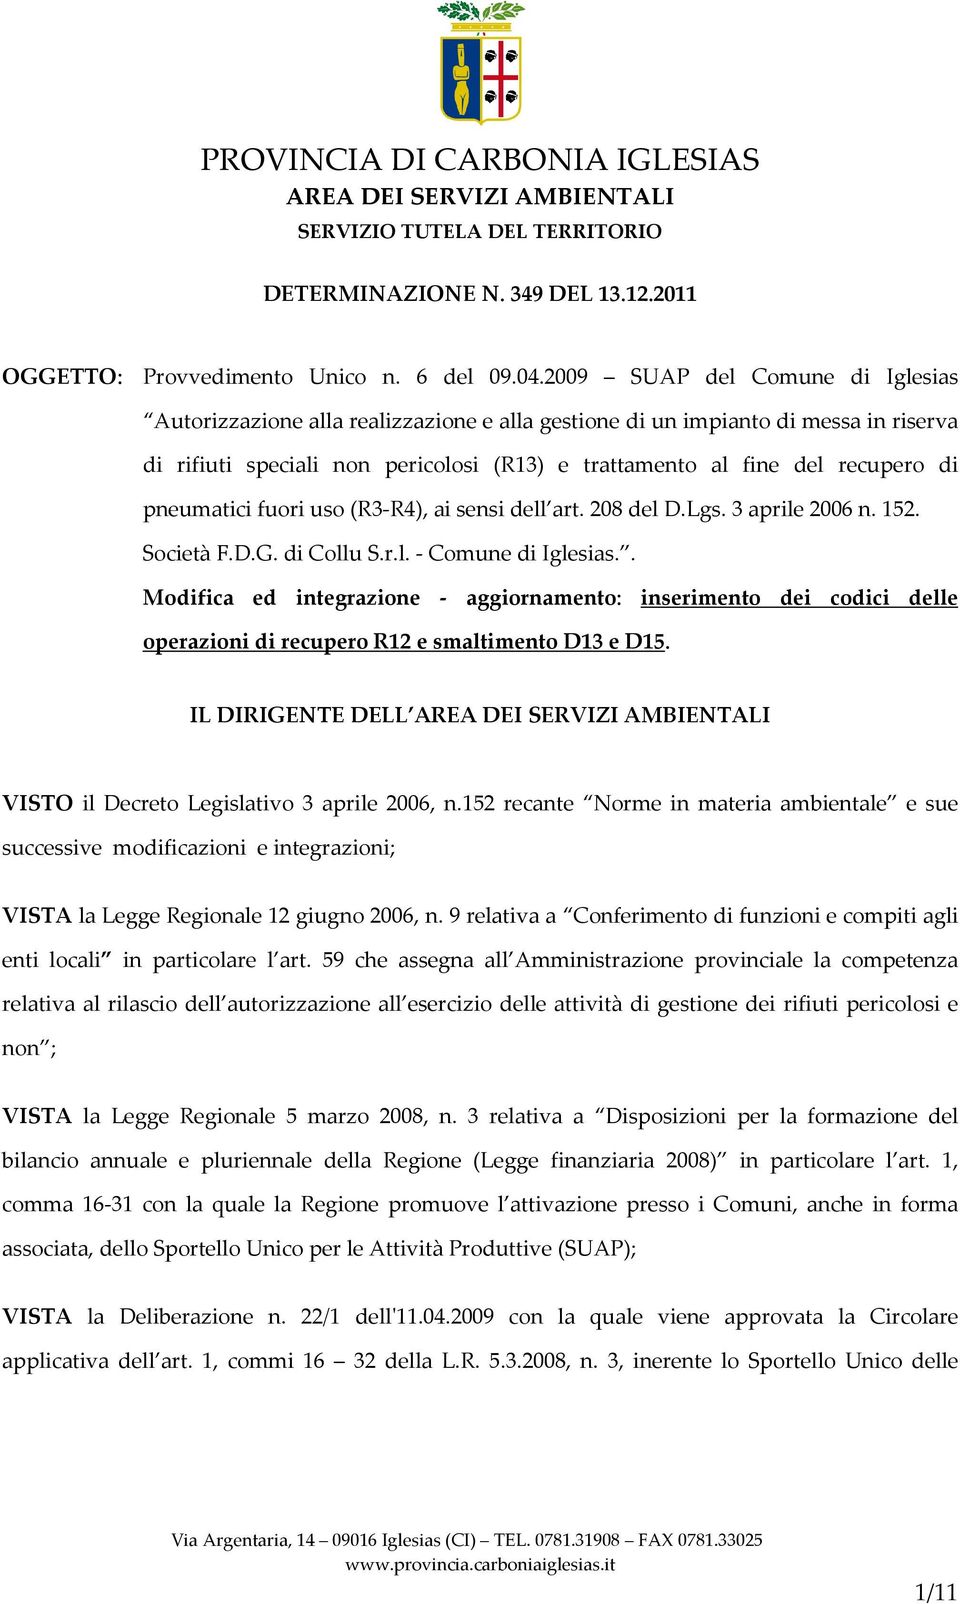 pneumatici fuori uso (R3-R4), ai sensi dell art. 208 del D.Lgs. 3 aprile 2006 n. 152. Società F.D.G. di Collu S.r.l. - Comune di Iglesias.